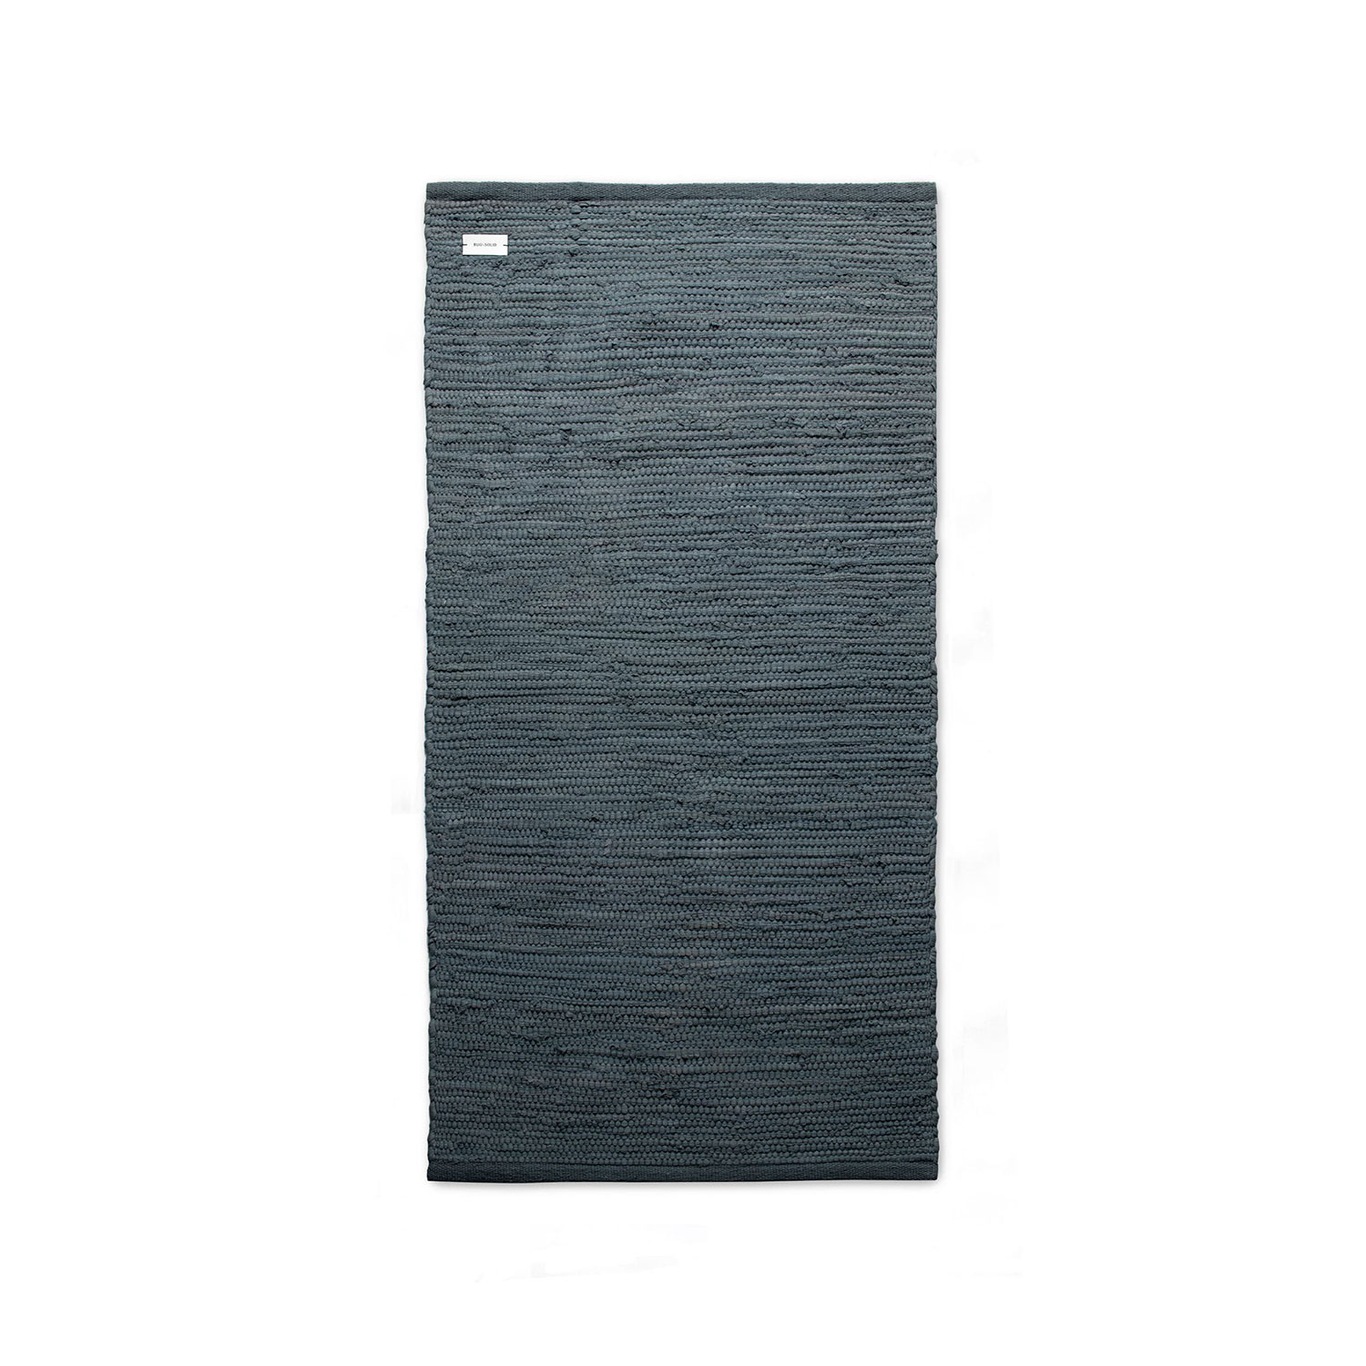 Cotton Teppich Steel Grey, 140x200 cm